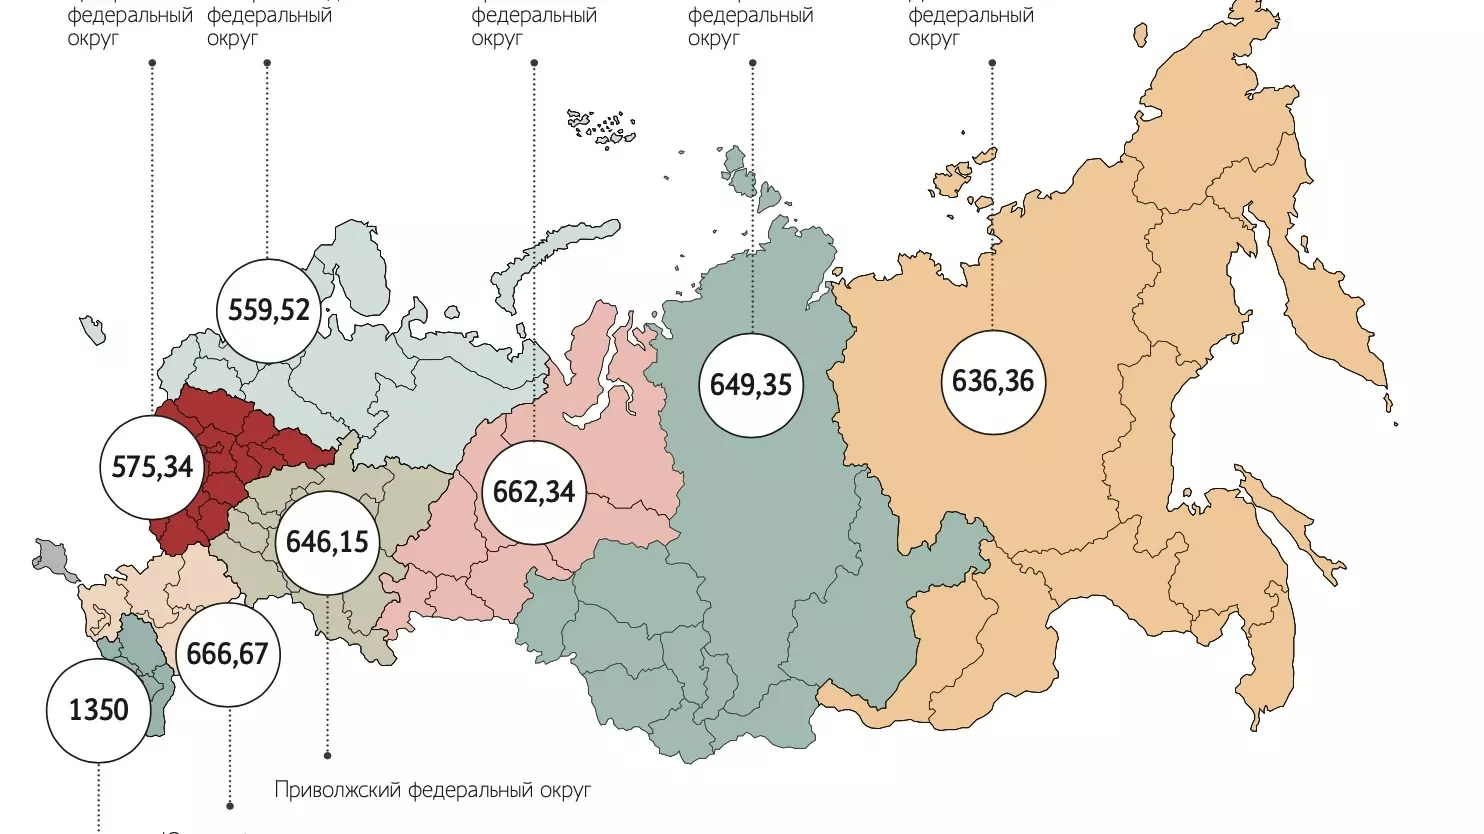 Число разводов на 1 тысячу населения по регионам России